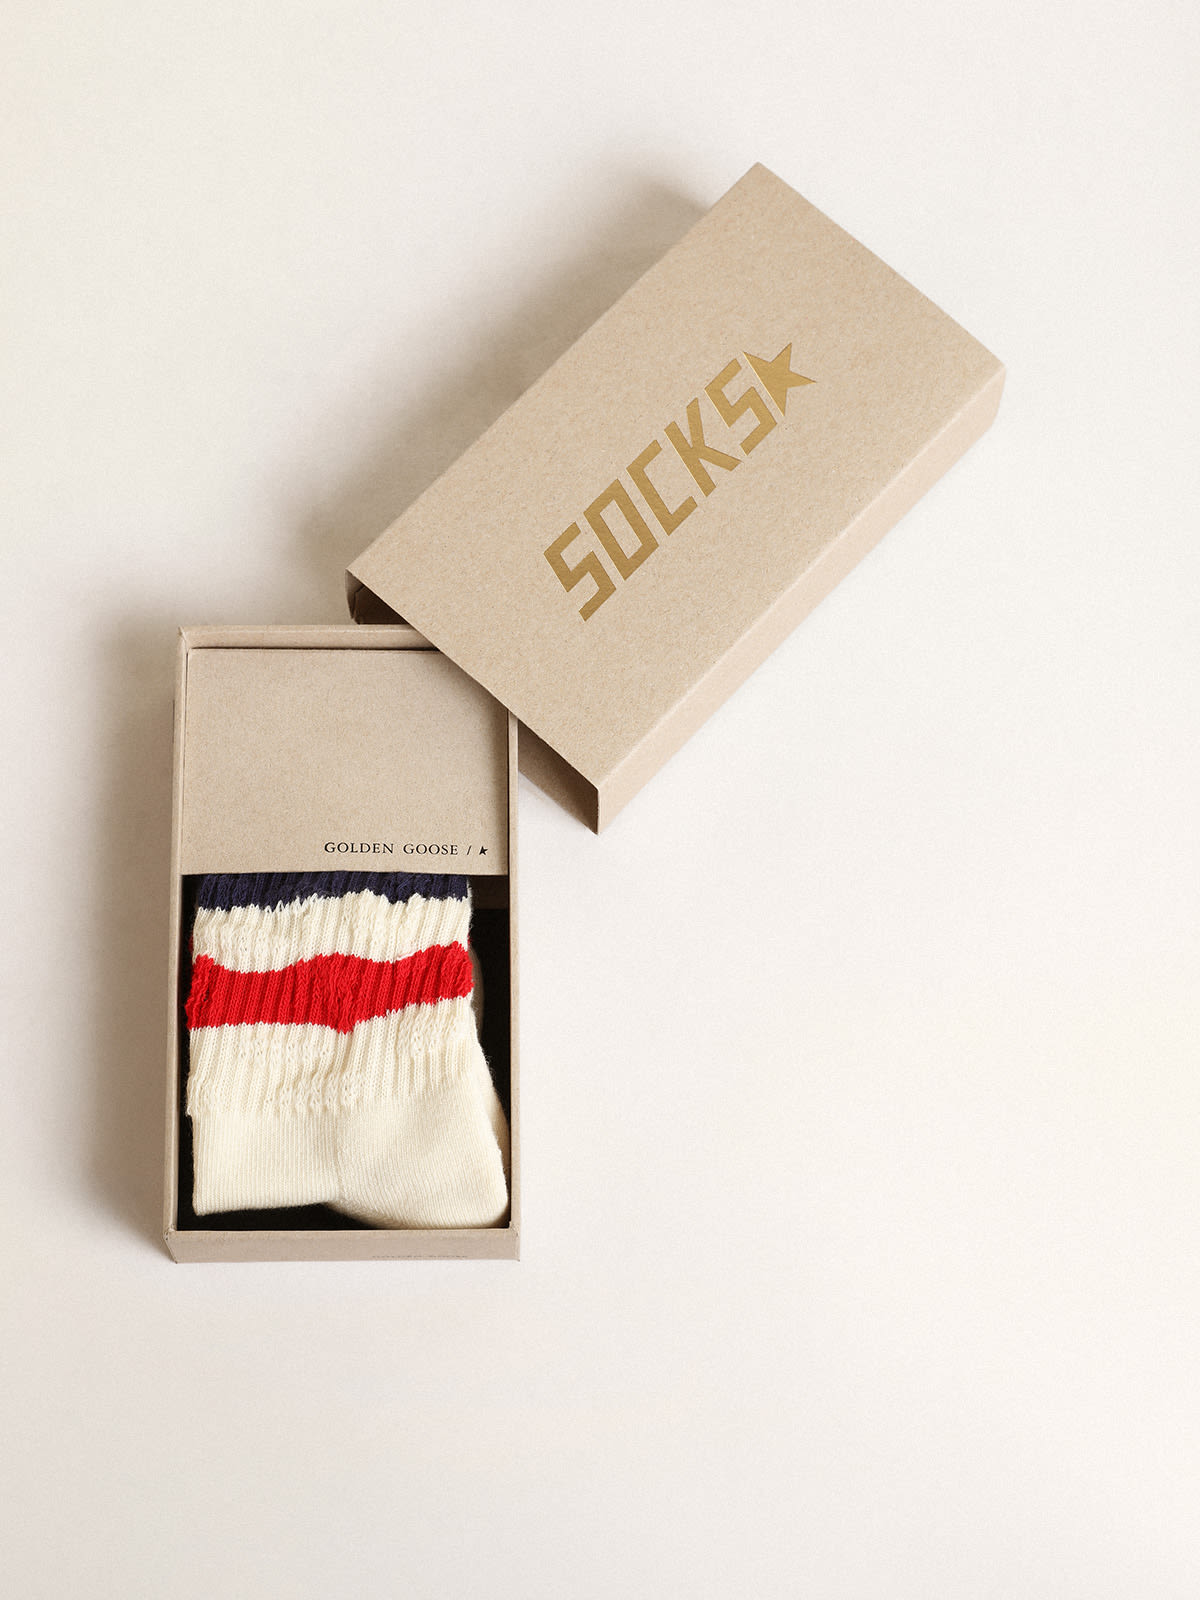 Golden Goose - Calcetines de algodón efecto desgastado blanco con rayas rojas y azul marino in 